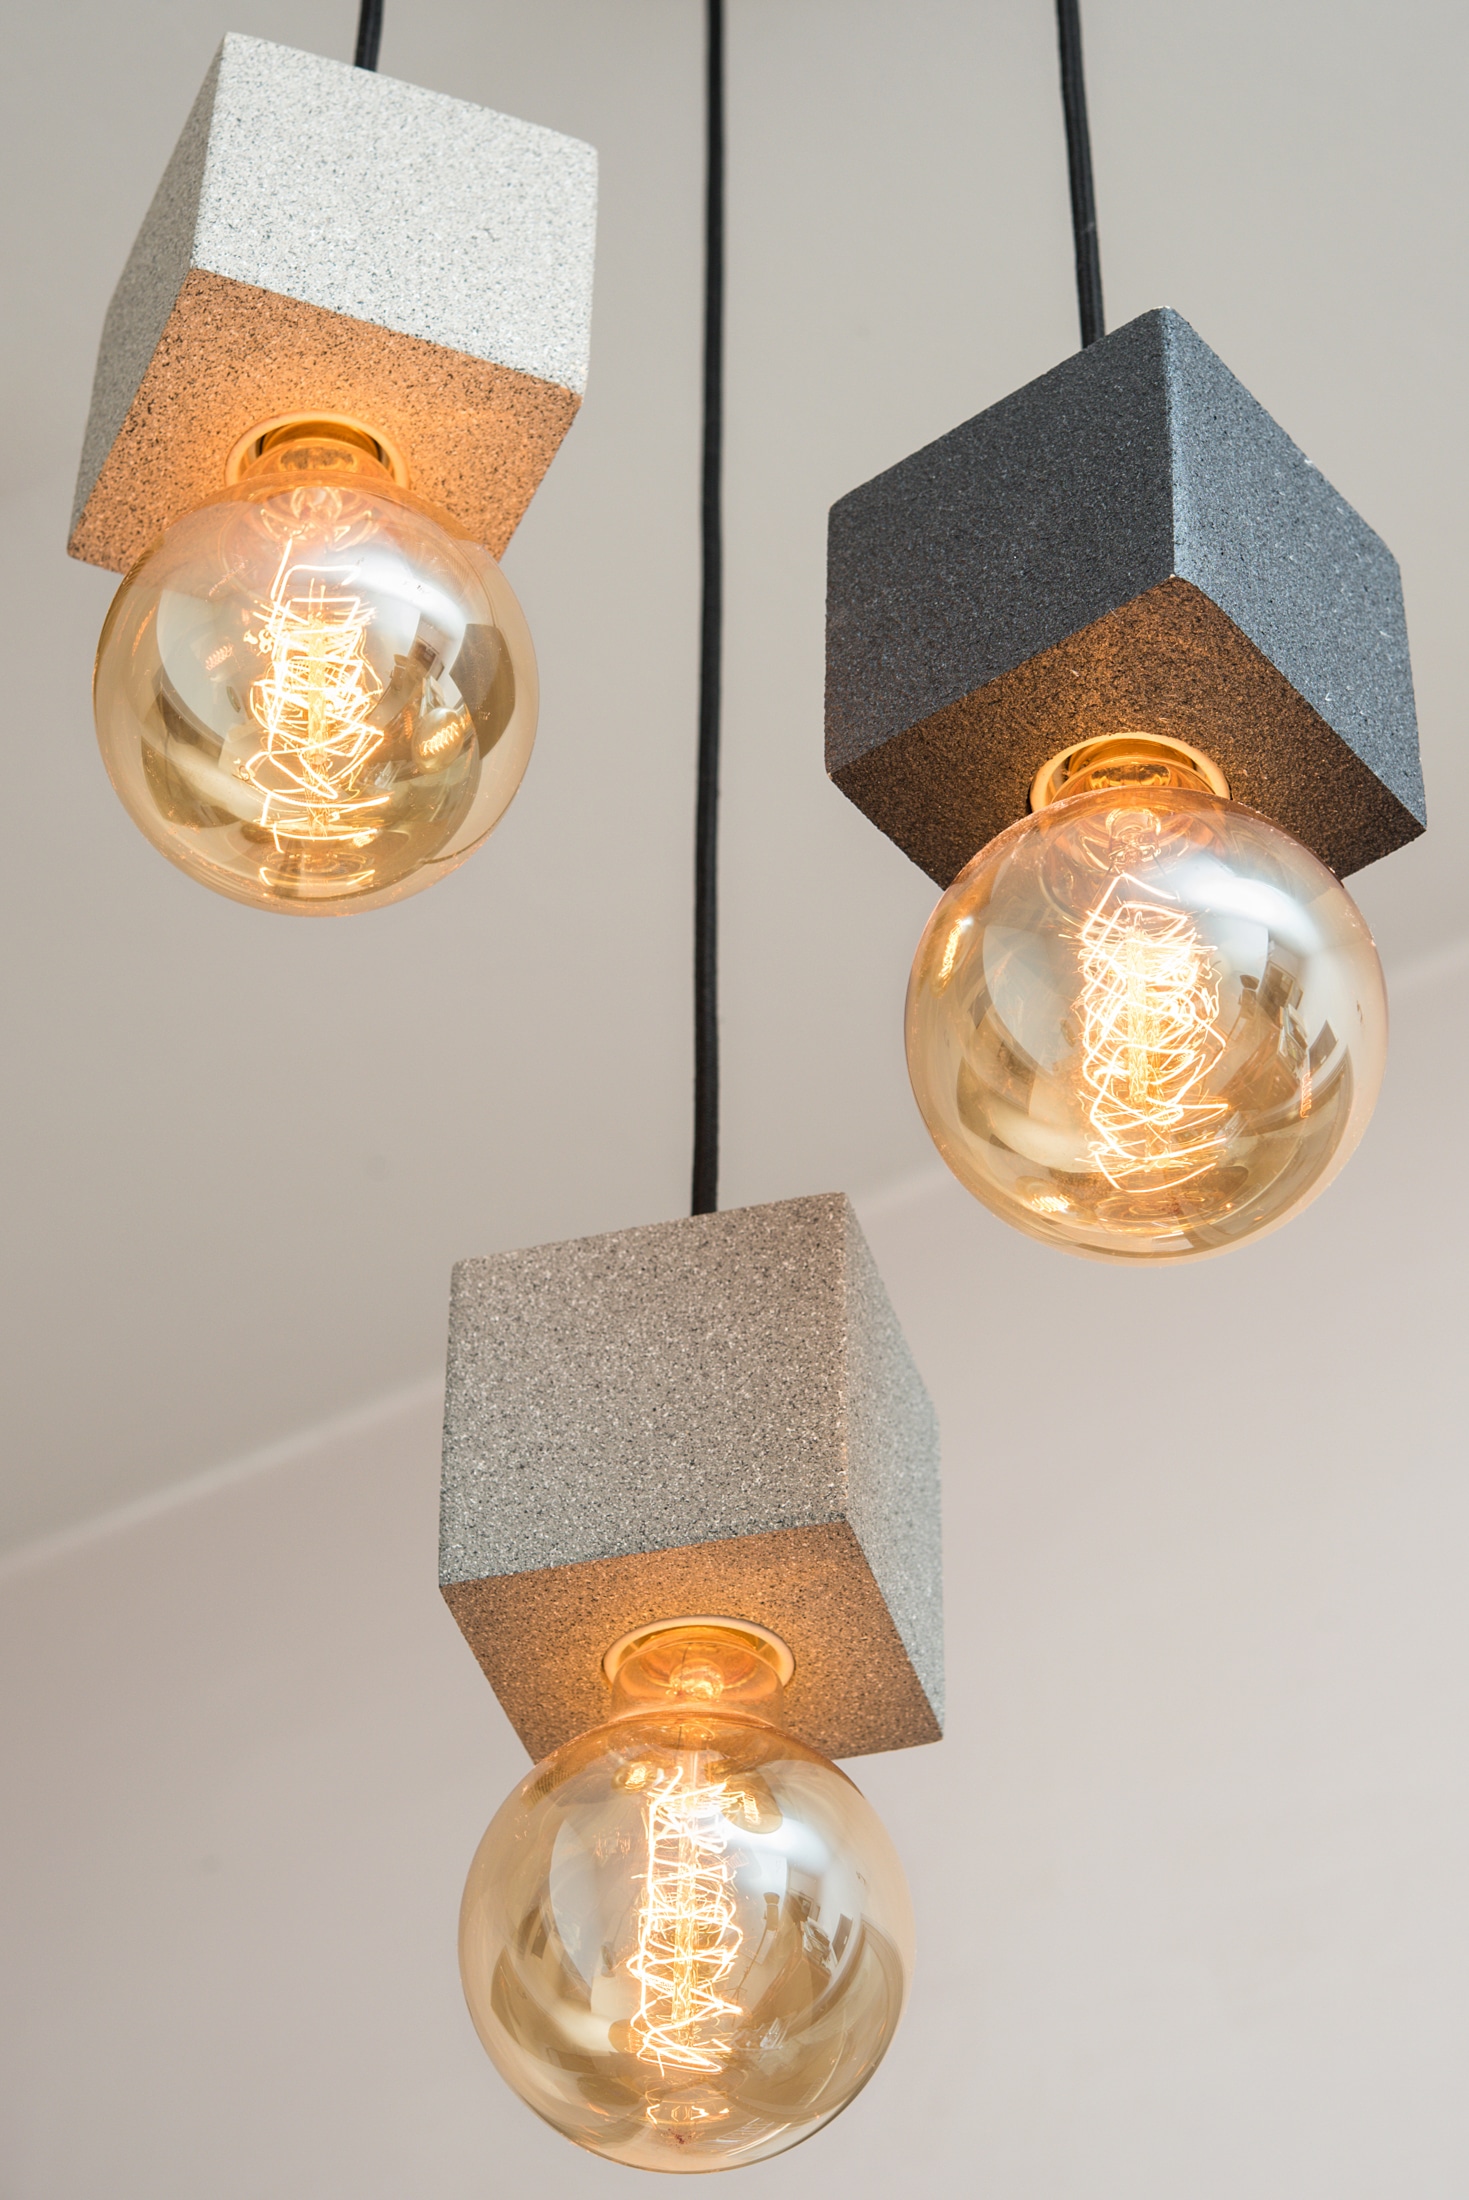 תאורה מעוצב תלוי קוביות אבן פחם | אריאל נתנסון אמן גופי תאורה מעוצבים